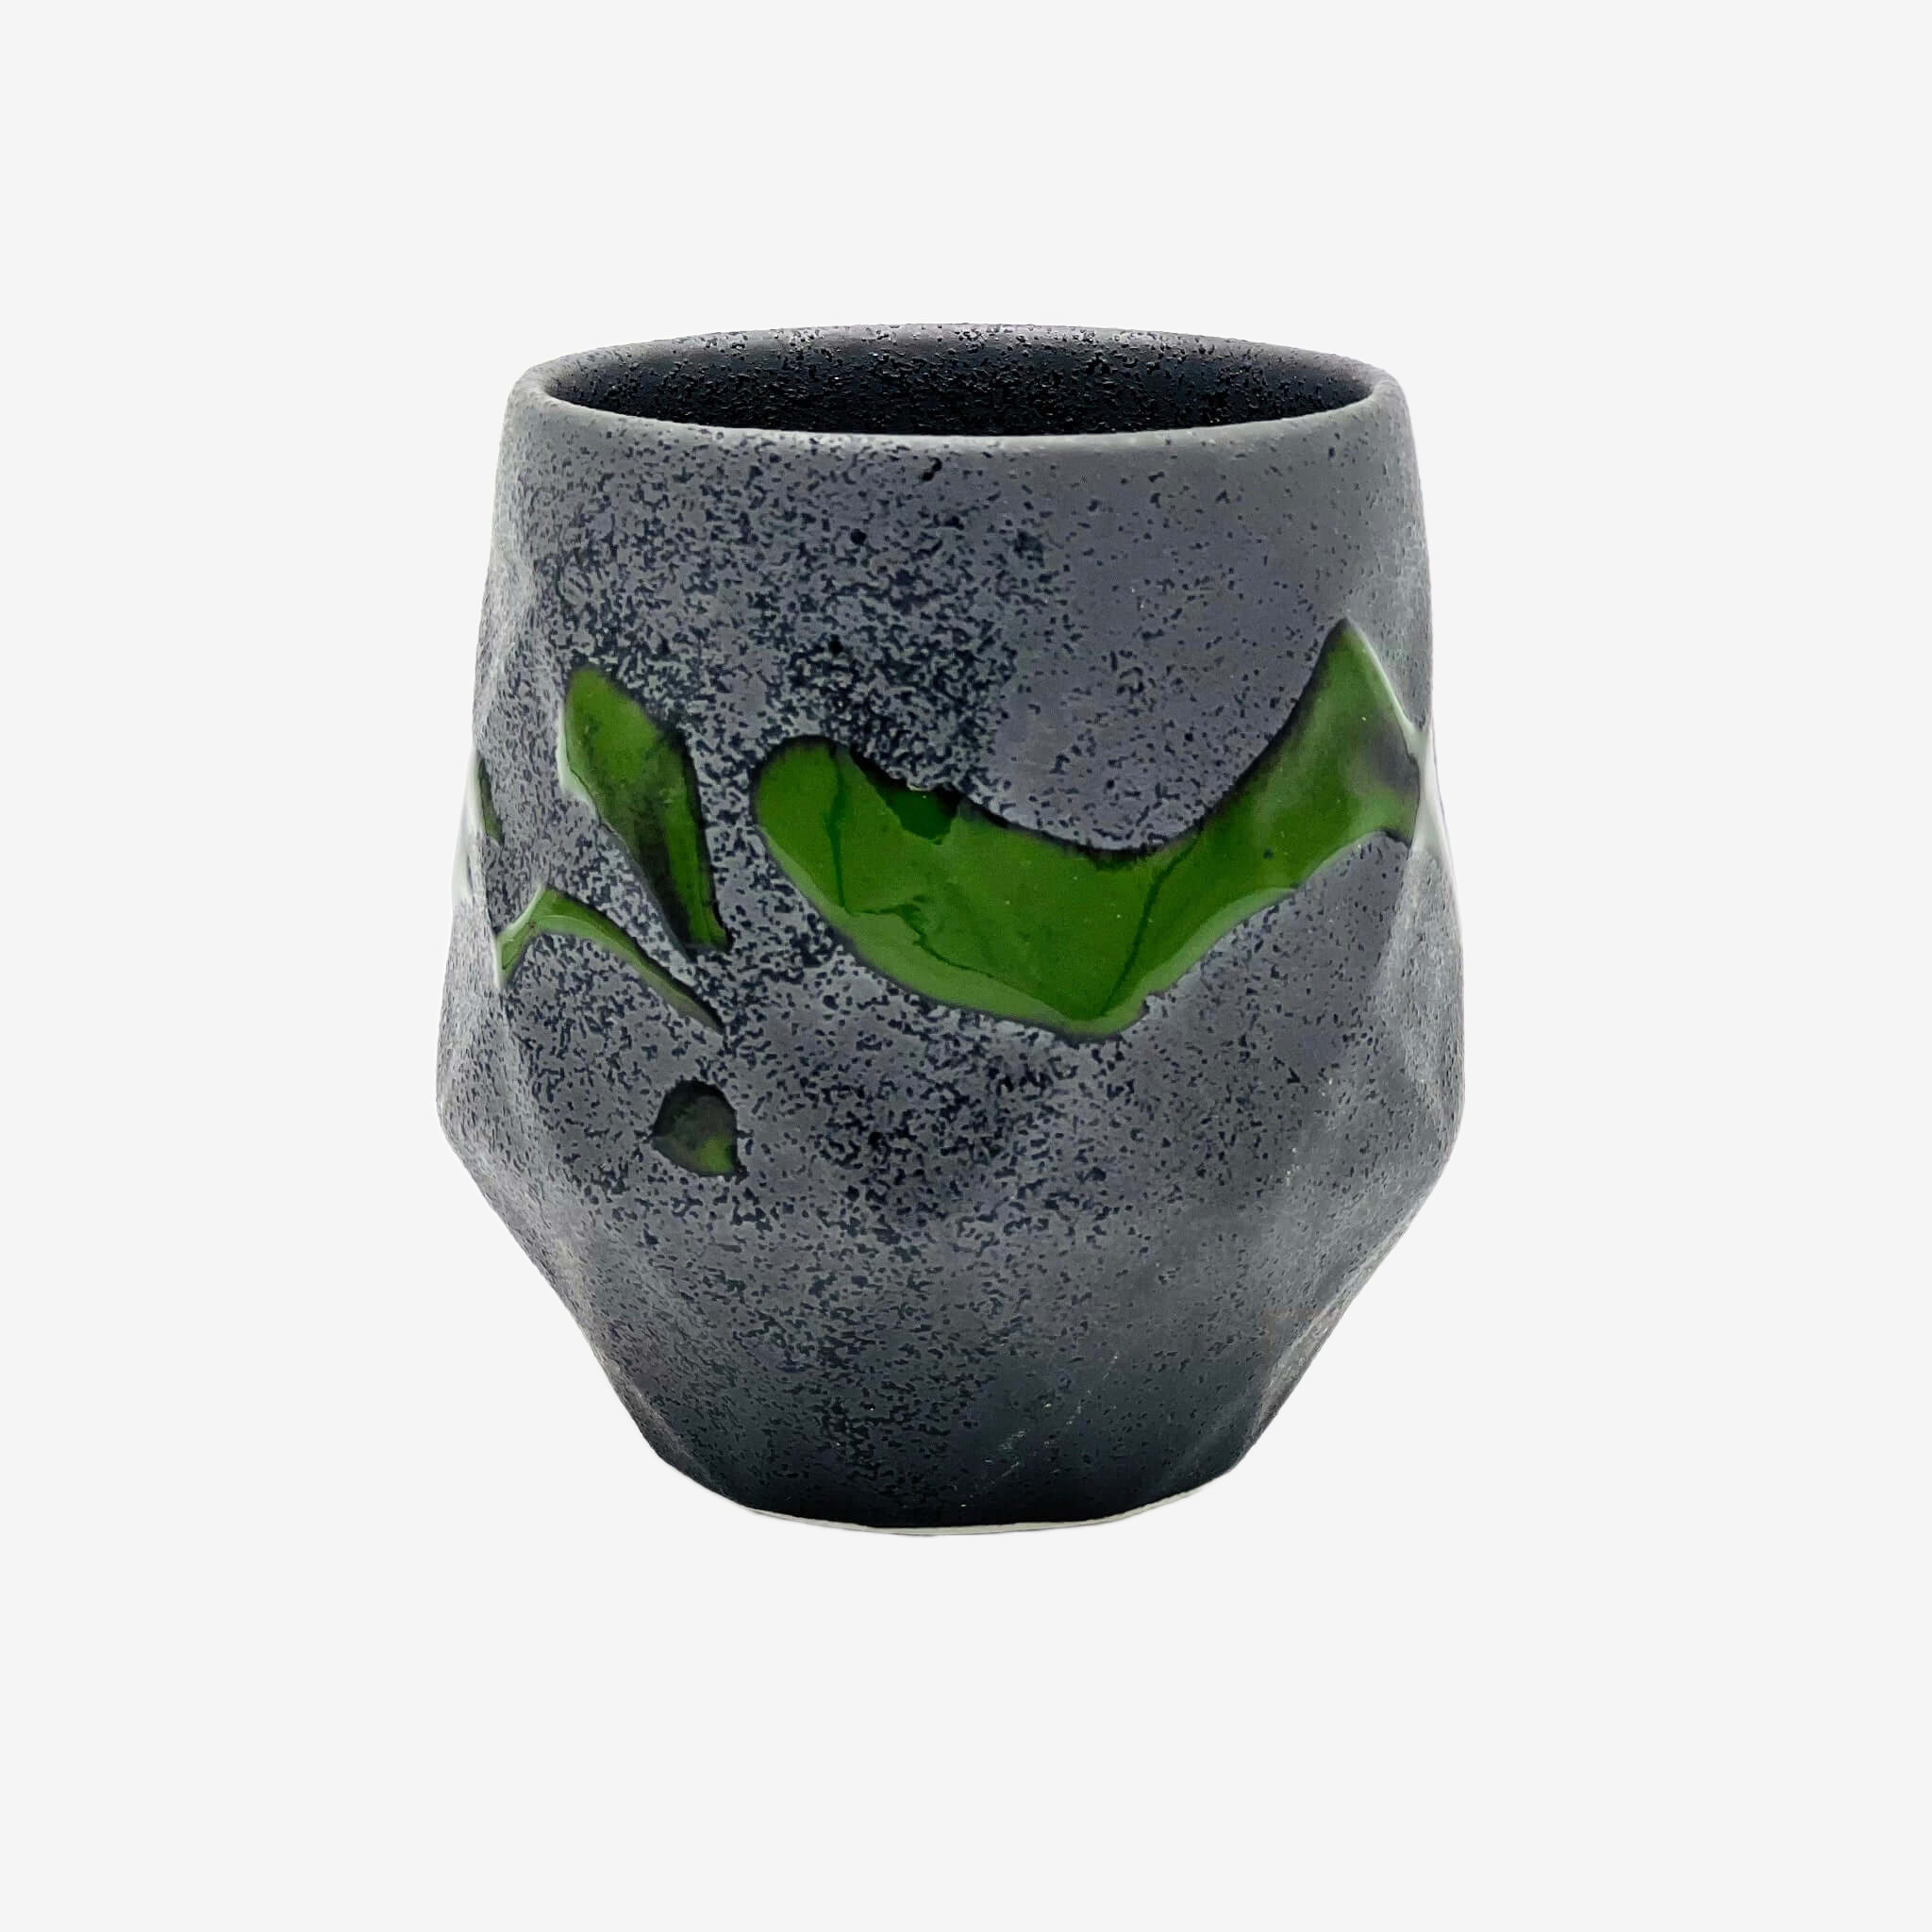 Kurobuki Ryusui Grey Green Teacup Teaware Inoue Tea